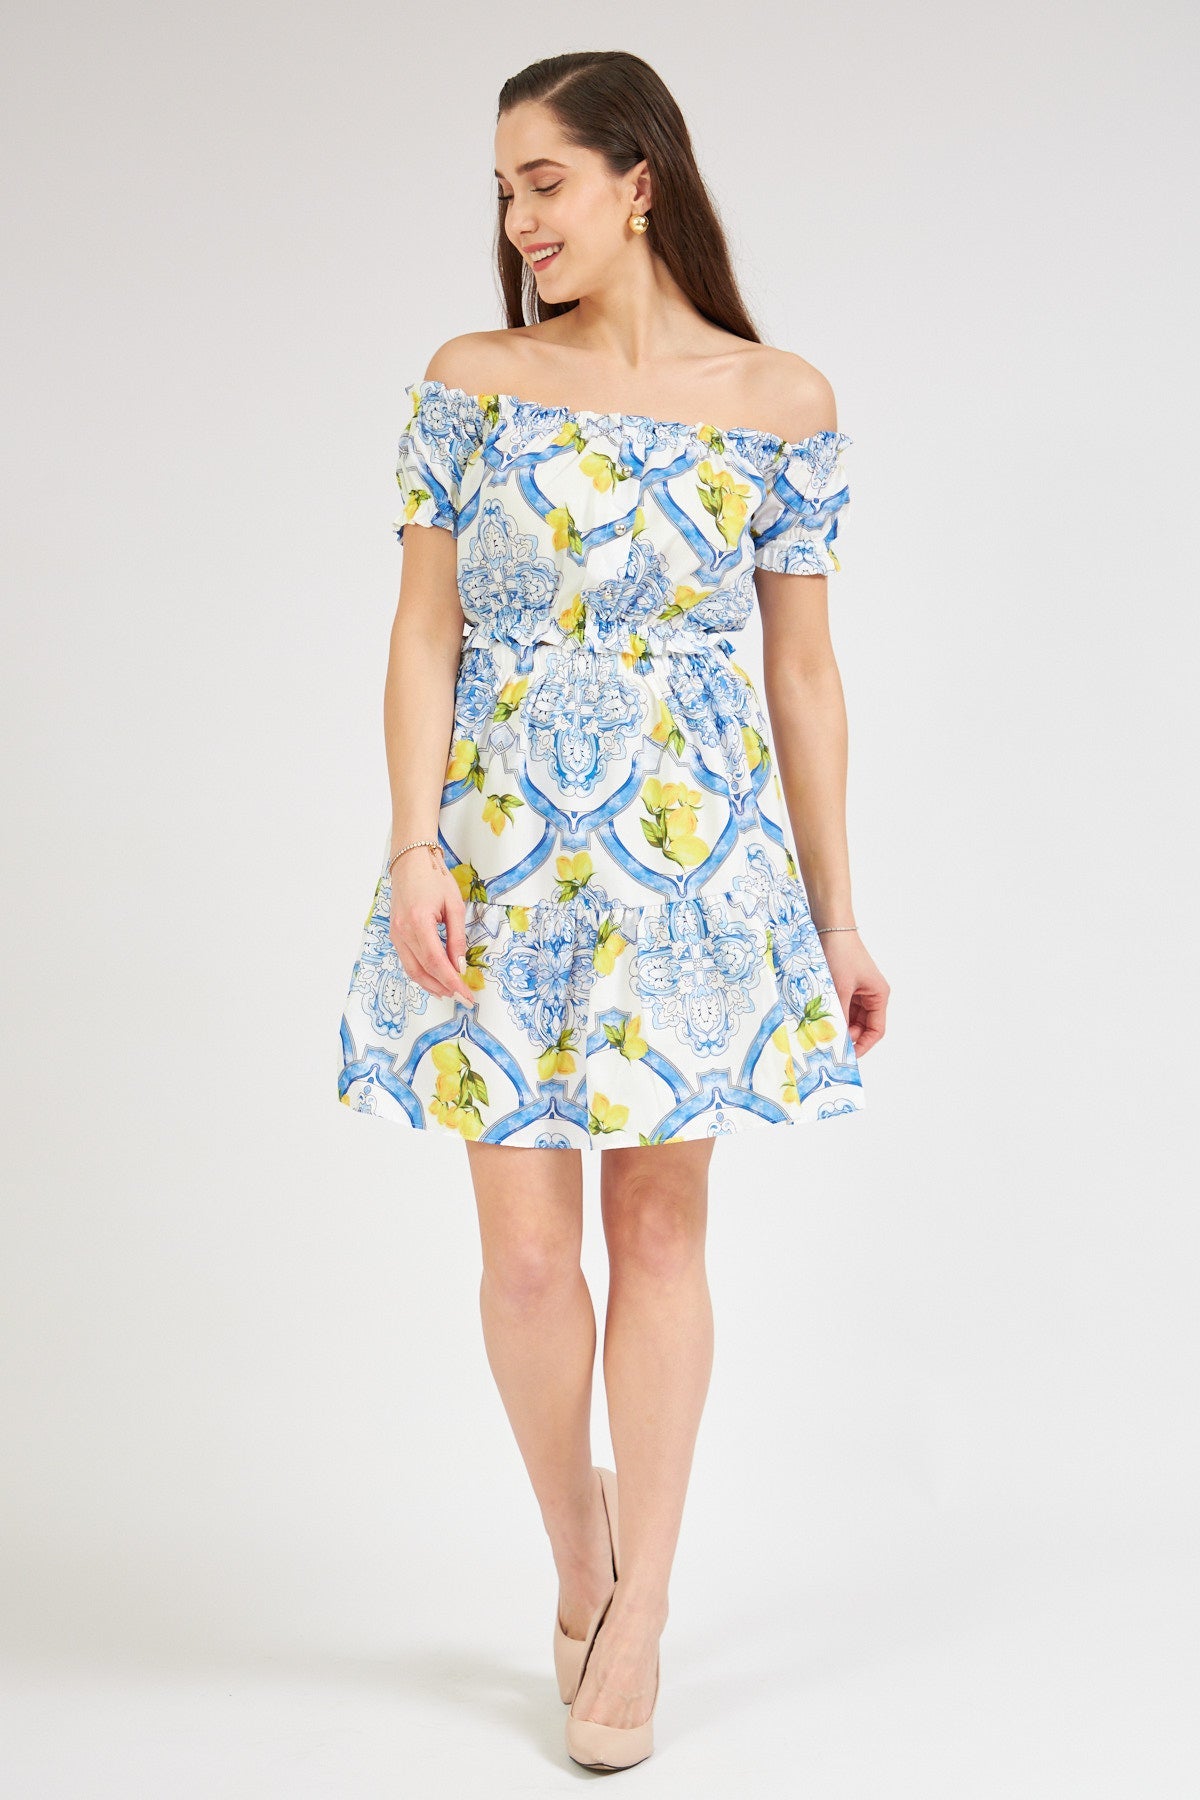 Strapless Skirt Set with Lemon Pattern - Lebbse